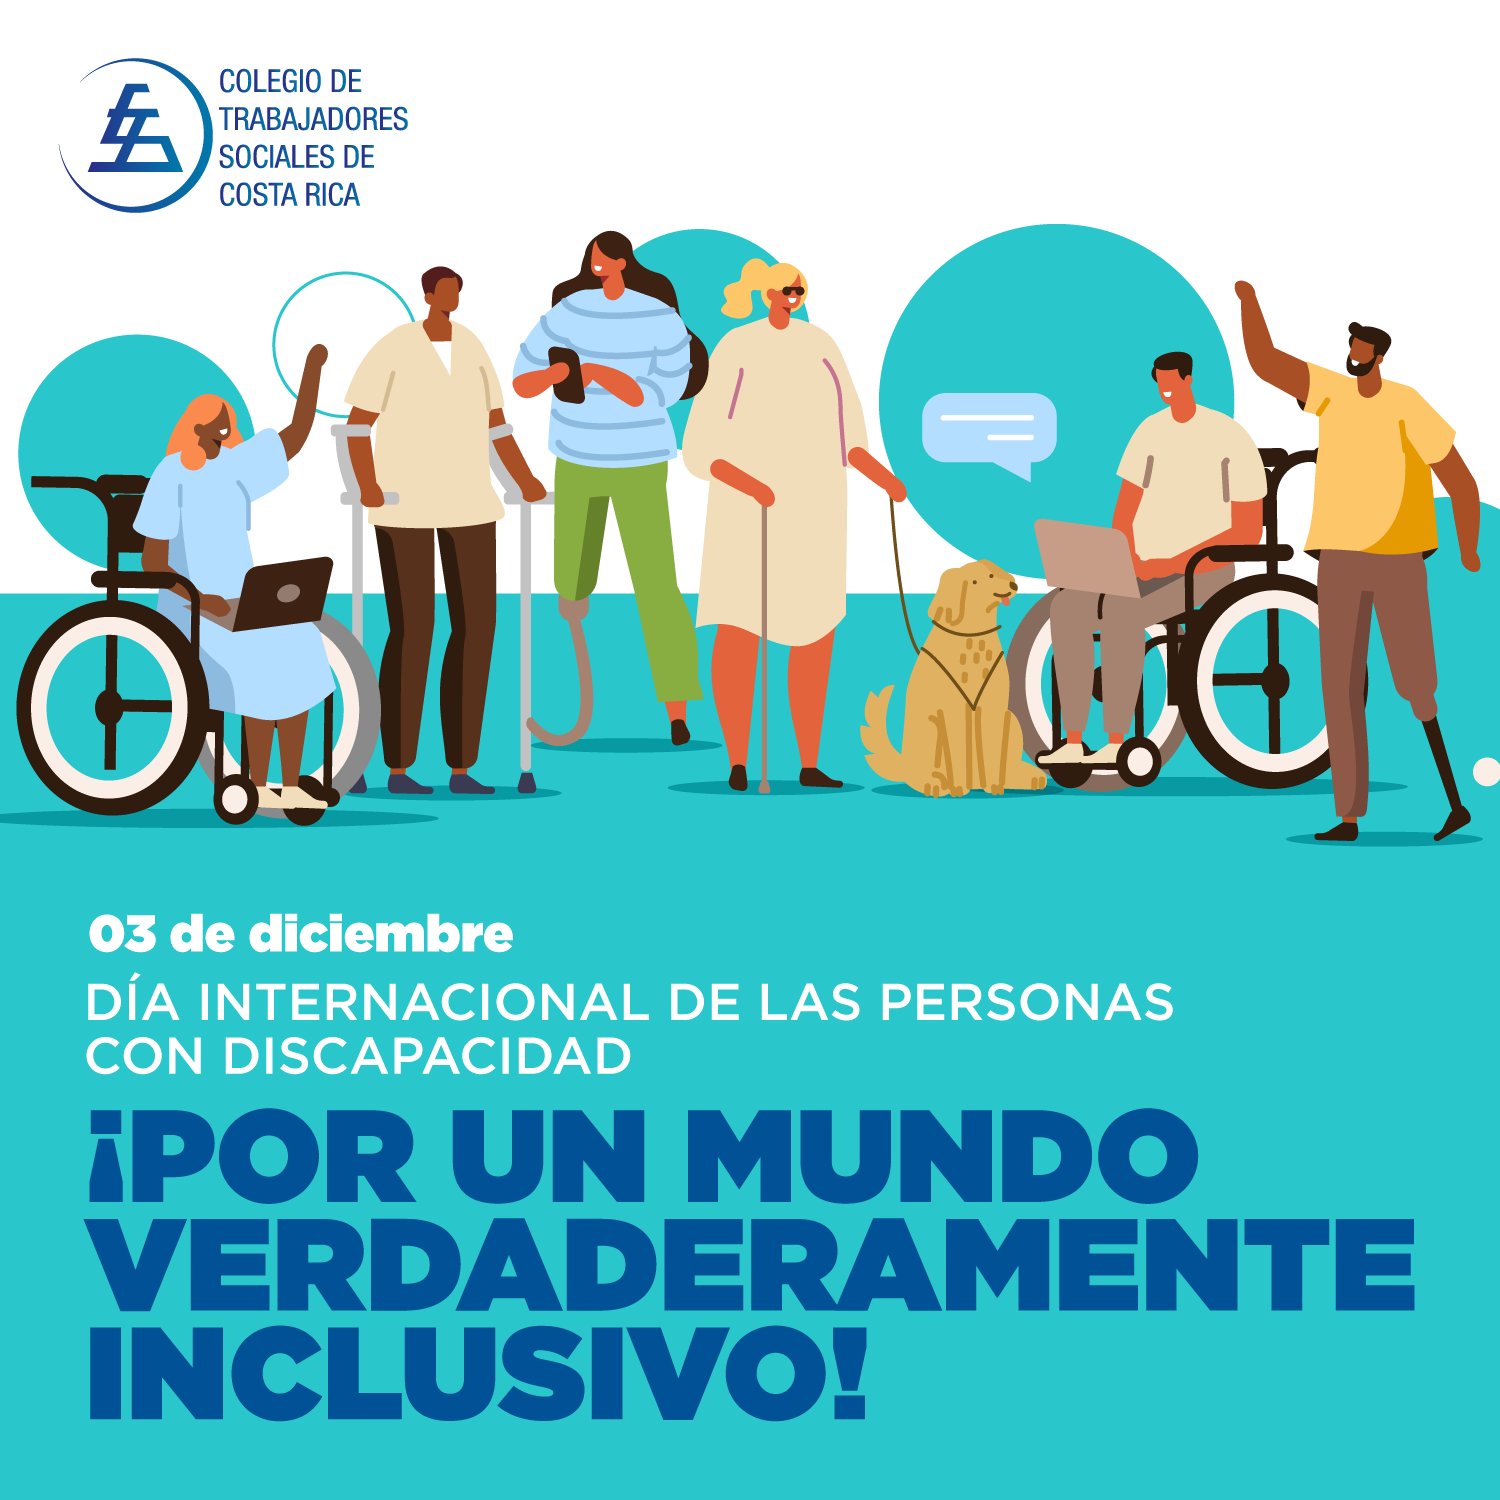 COLTRAS on "#conmemoración Trabajo Social en la activa por la promoción y exigibilidad de los derechos humanos, hace un llamado para promover bienestar de las personas con discapacidades de